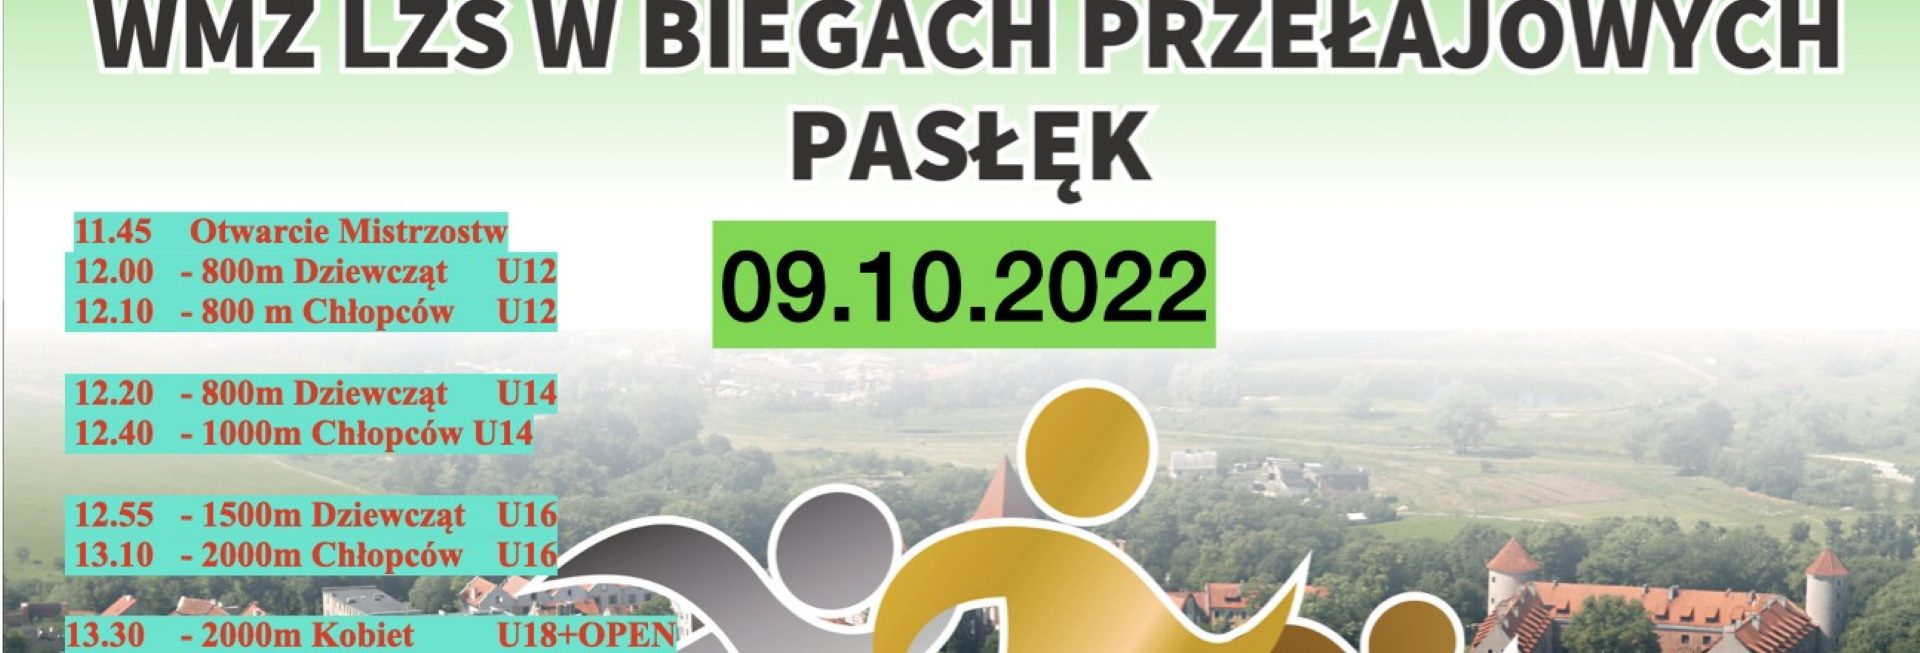 Plakat zapraszający do Pasłęka na Mistrzostwa Województwa WMZ LZS w Biegach Przełajowych Pasłęk 2022.